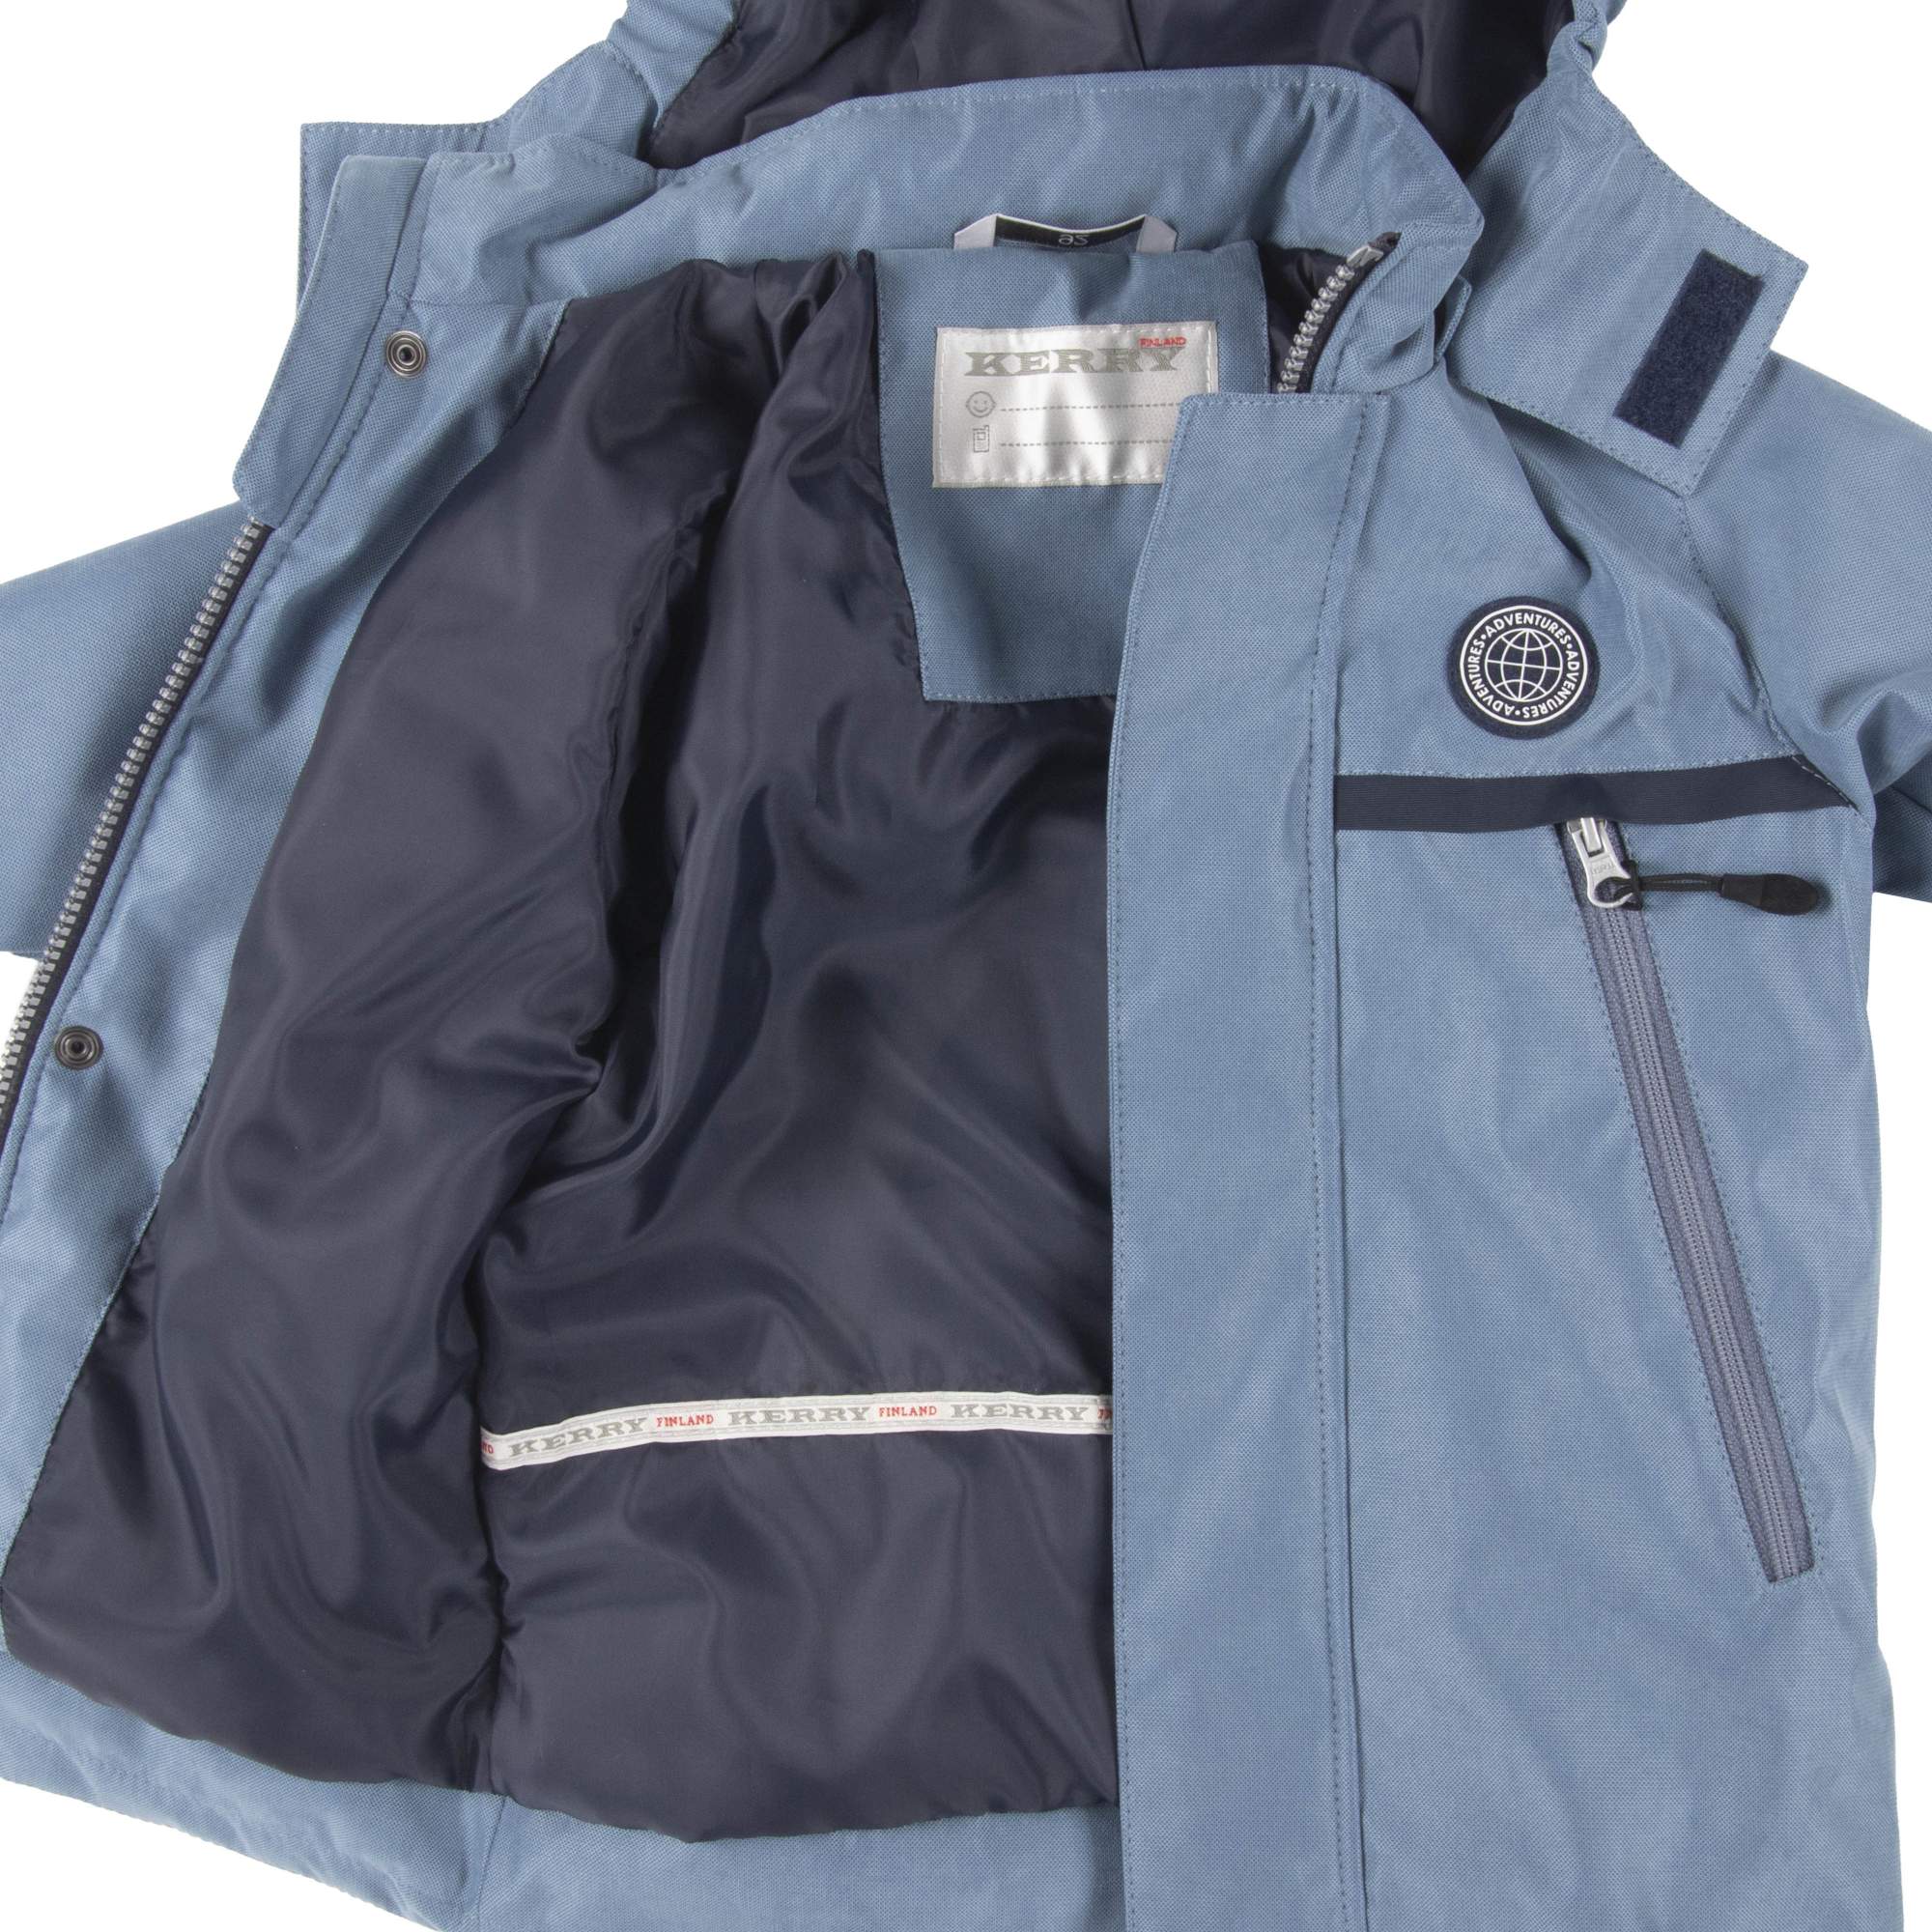 Куртка для мальчиков KERRY WADE K21021, р. 104